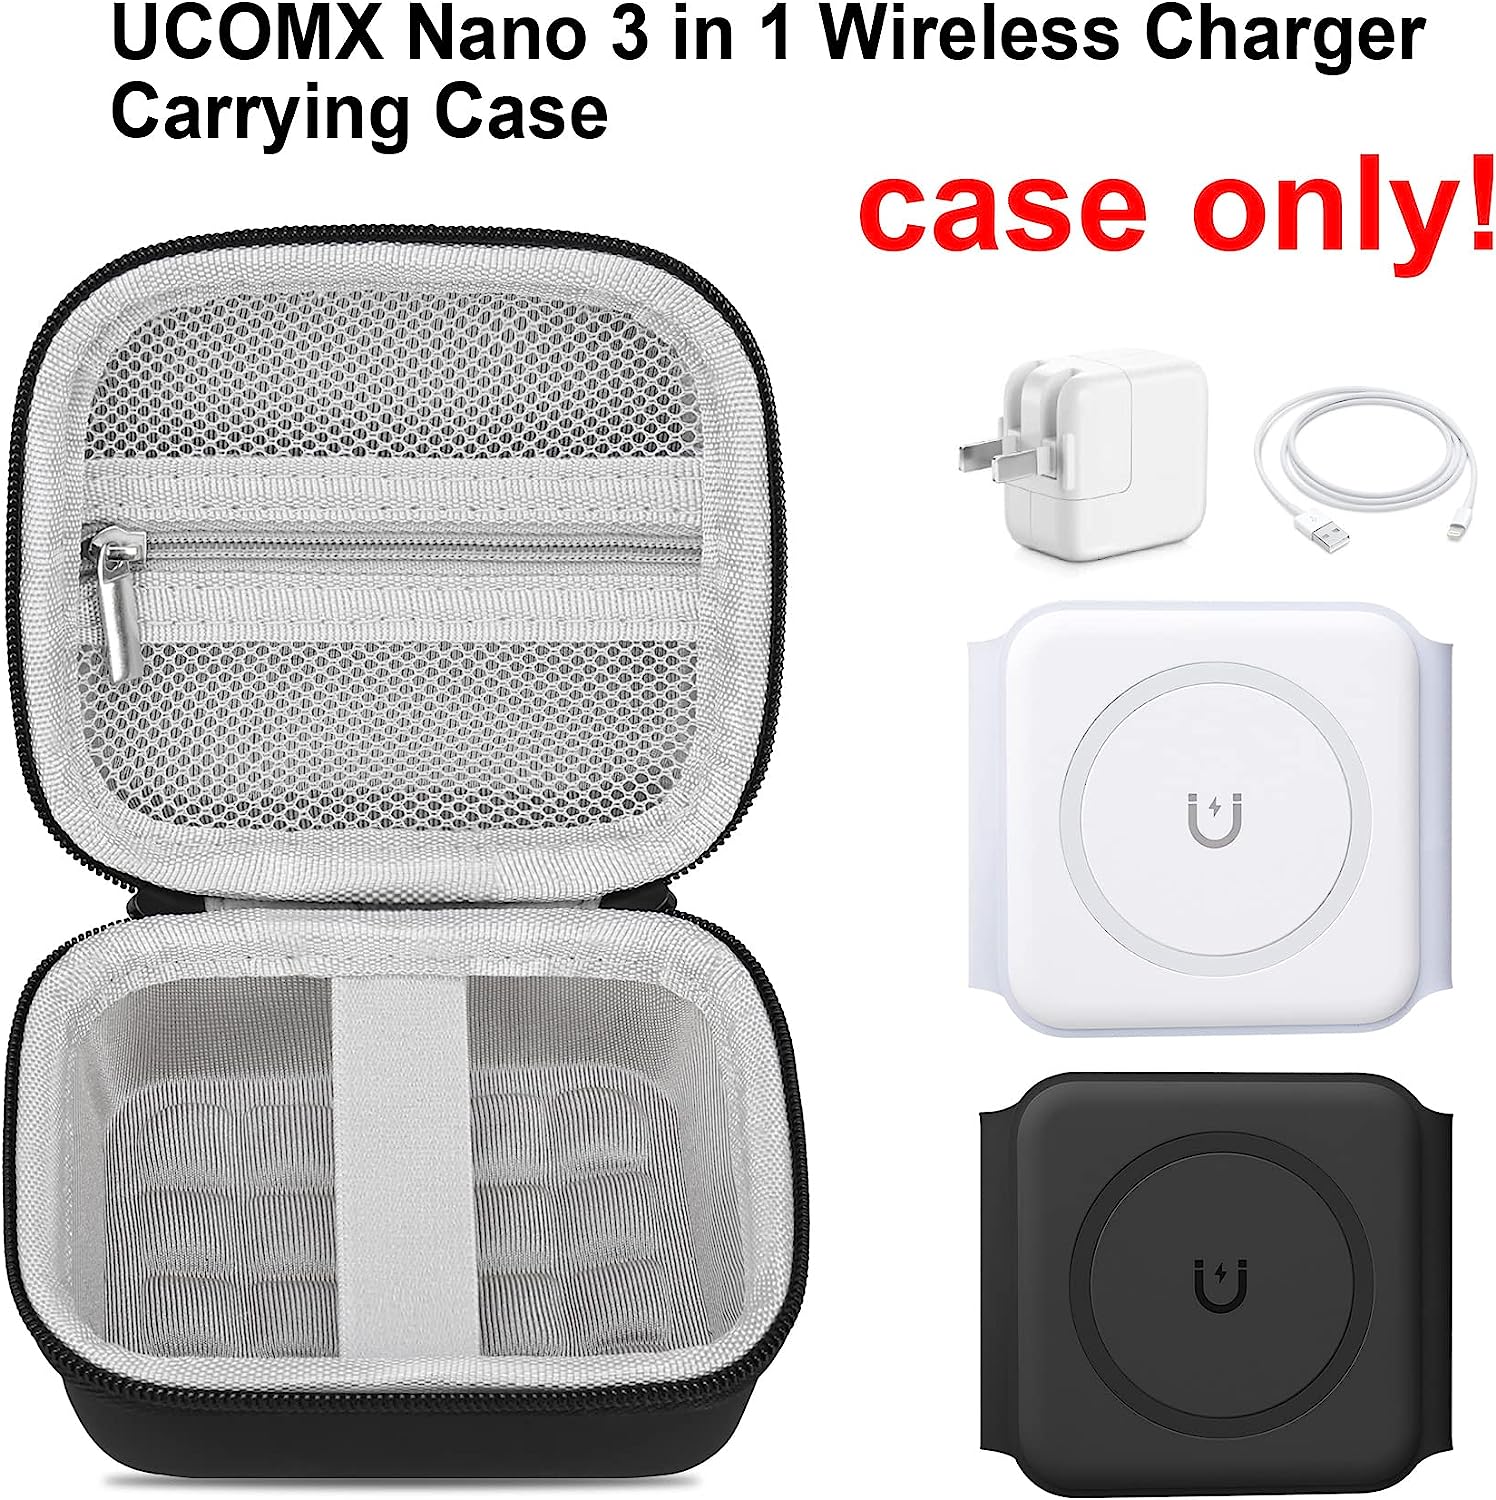 Elonbo キャリングケース UCOMX Nano 3 in 1 ワイヤレス充電器用、磁気折りたたみ式 3 in 1 充電ステーション、高速ワイヤレス充電パッド収納ホルダーバッグ、アダプターケーブルに適合するメッシュポケット、ブラック + グレー